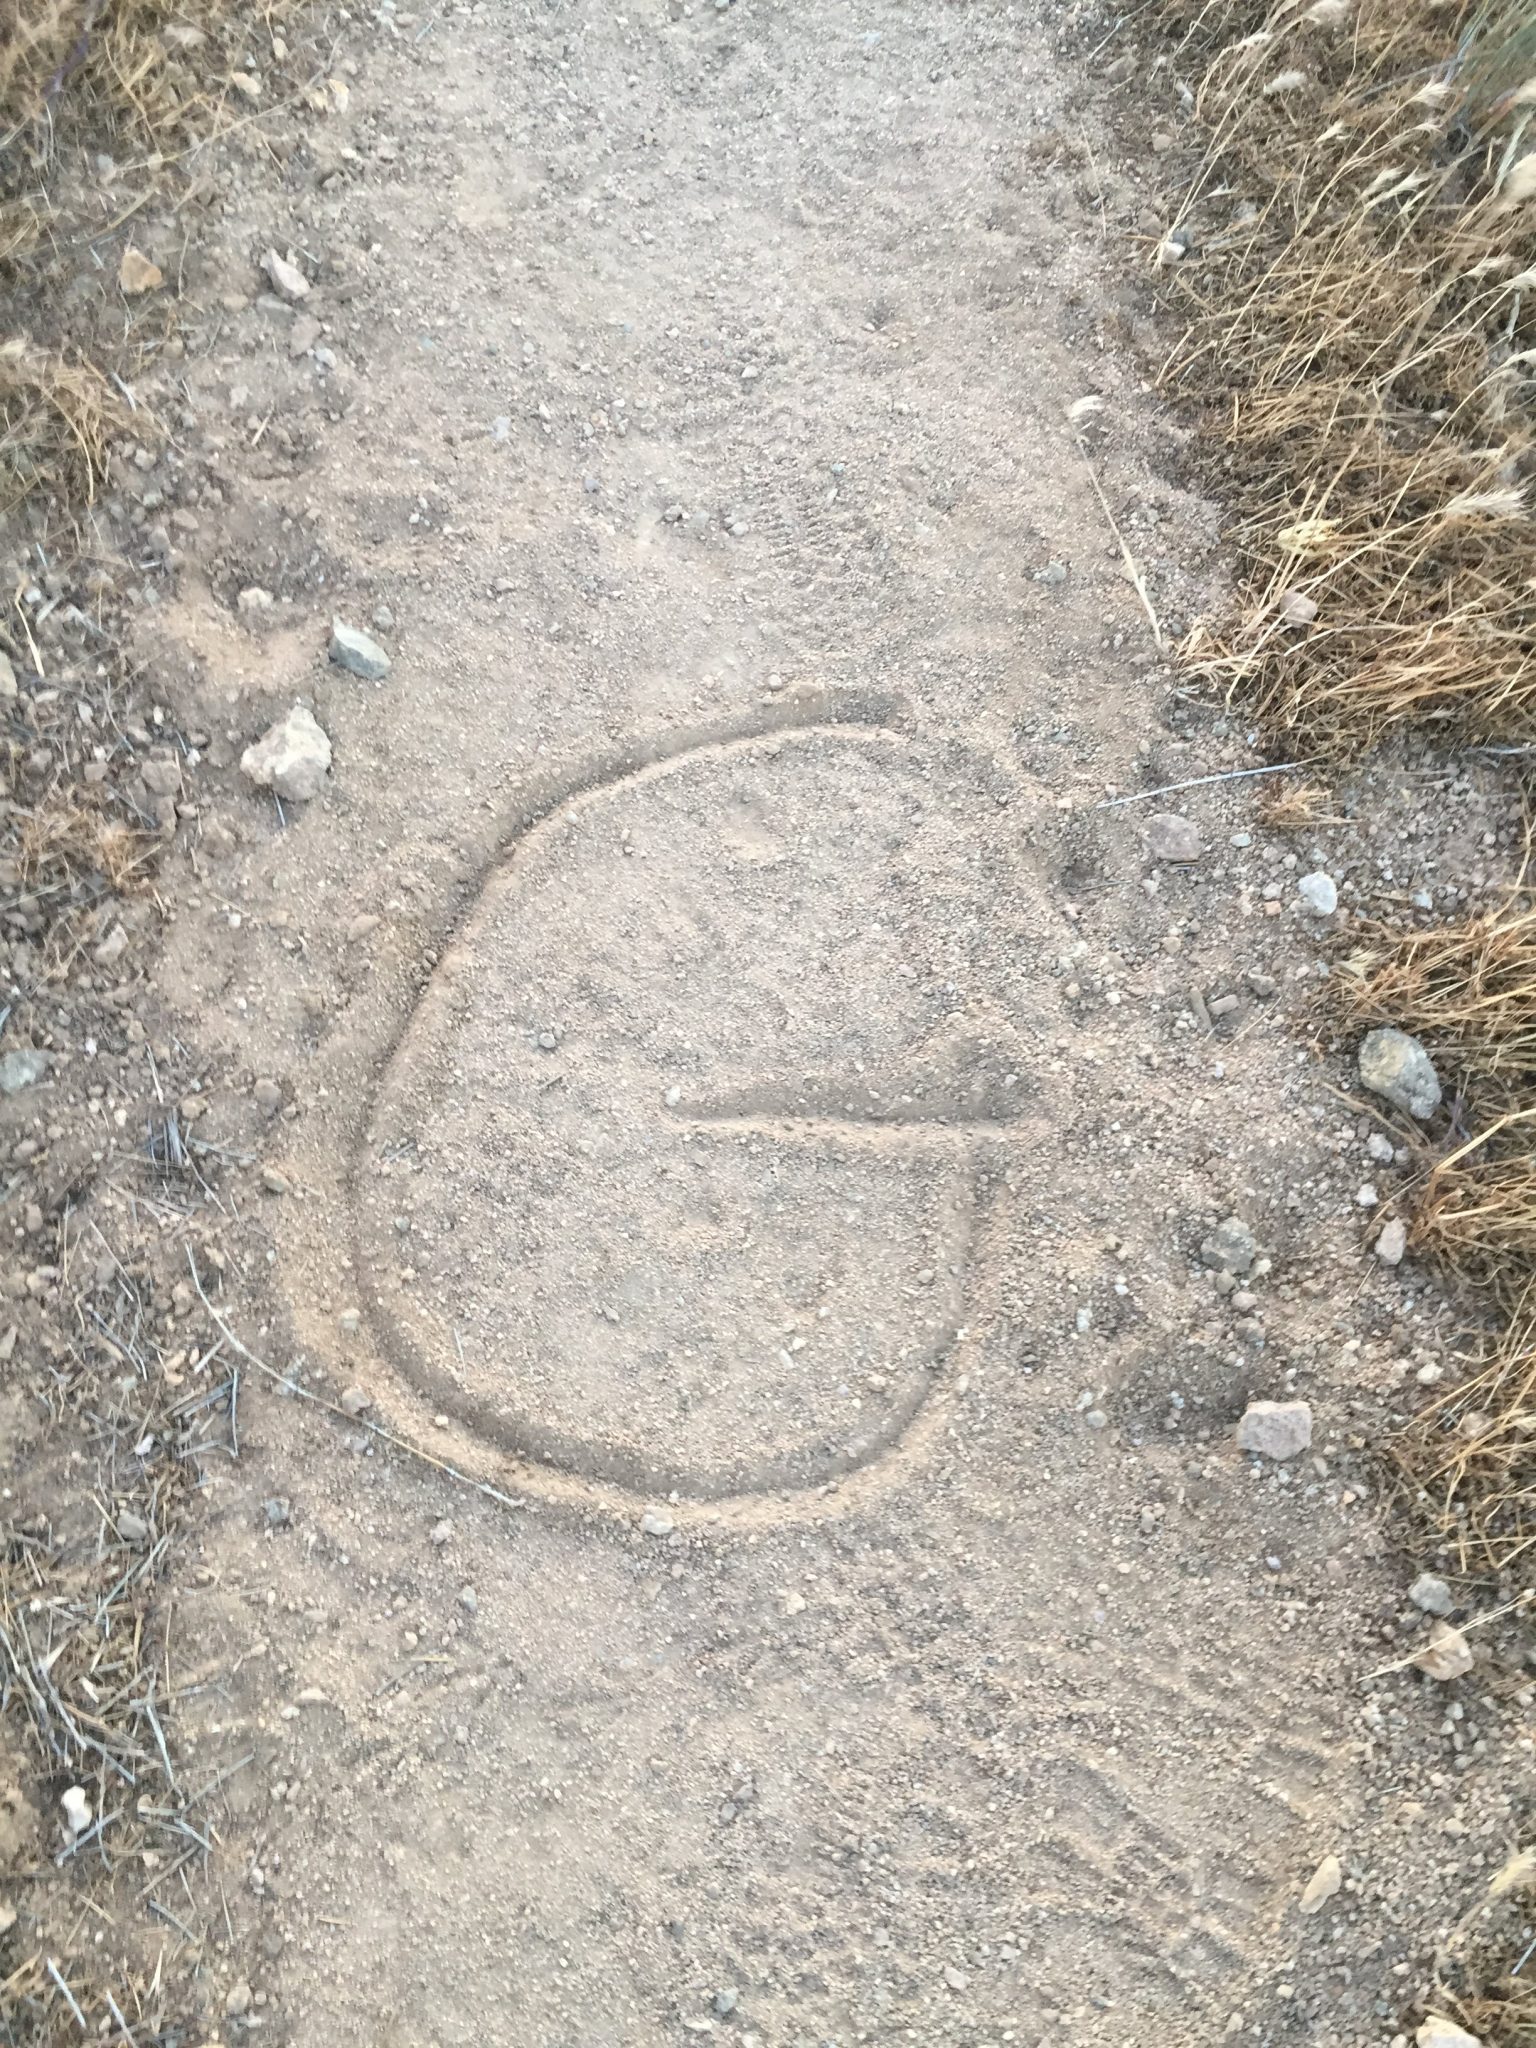 G for Gazelle written in the trail